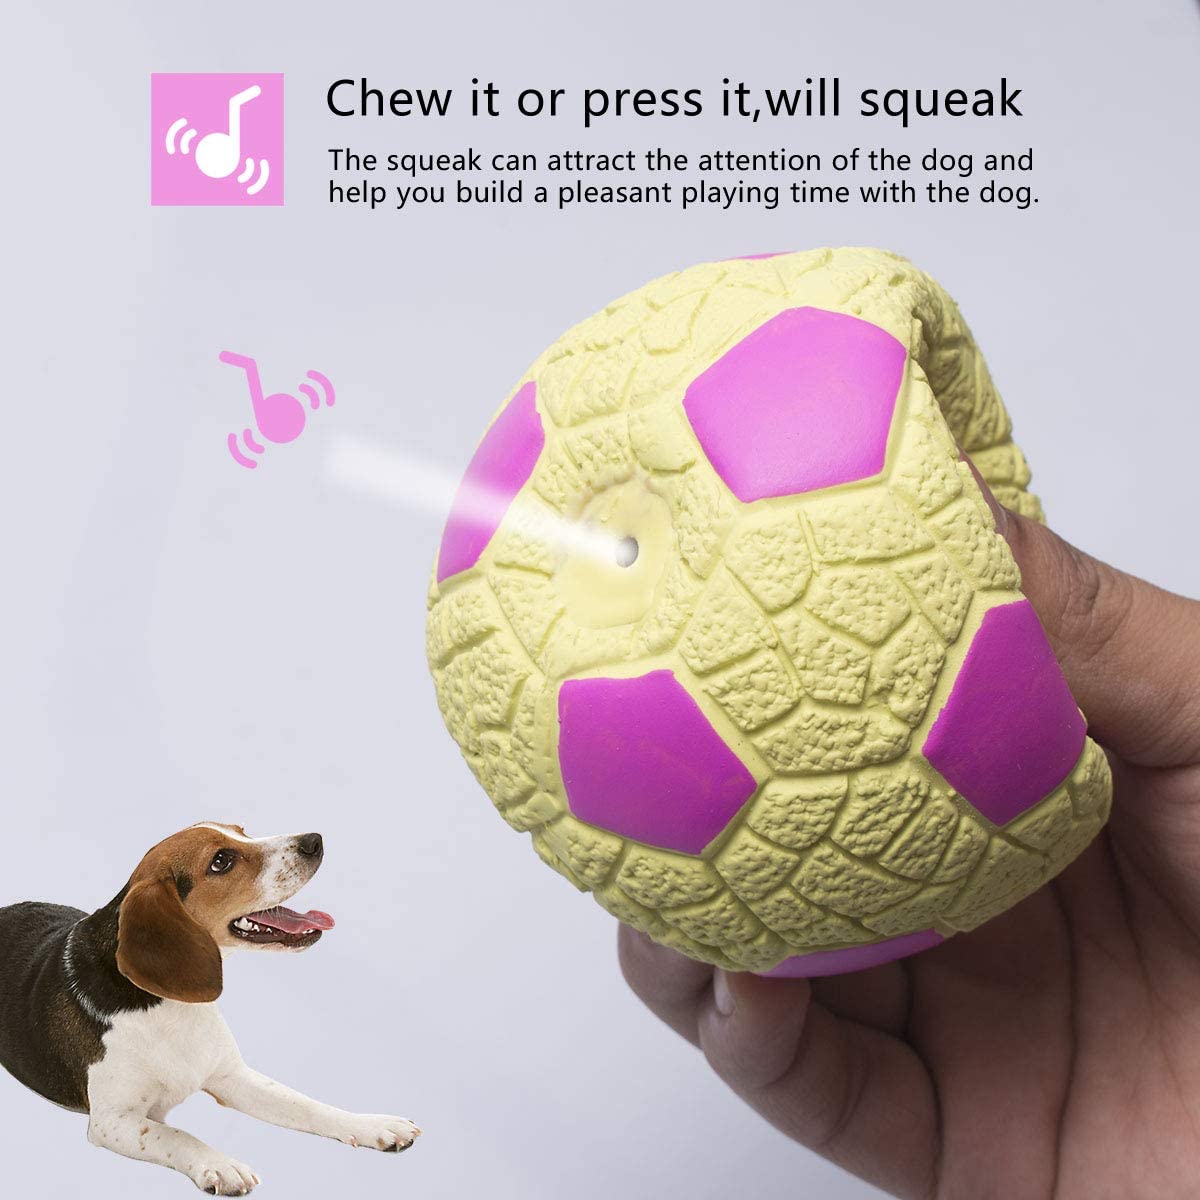  Petper Cw-0046EU - Juguete con sonido de pelota de látex para perros, juguete interactivo para jugar y entrenar 